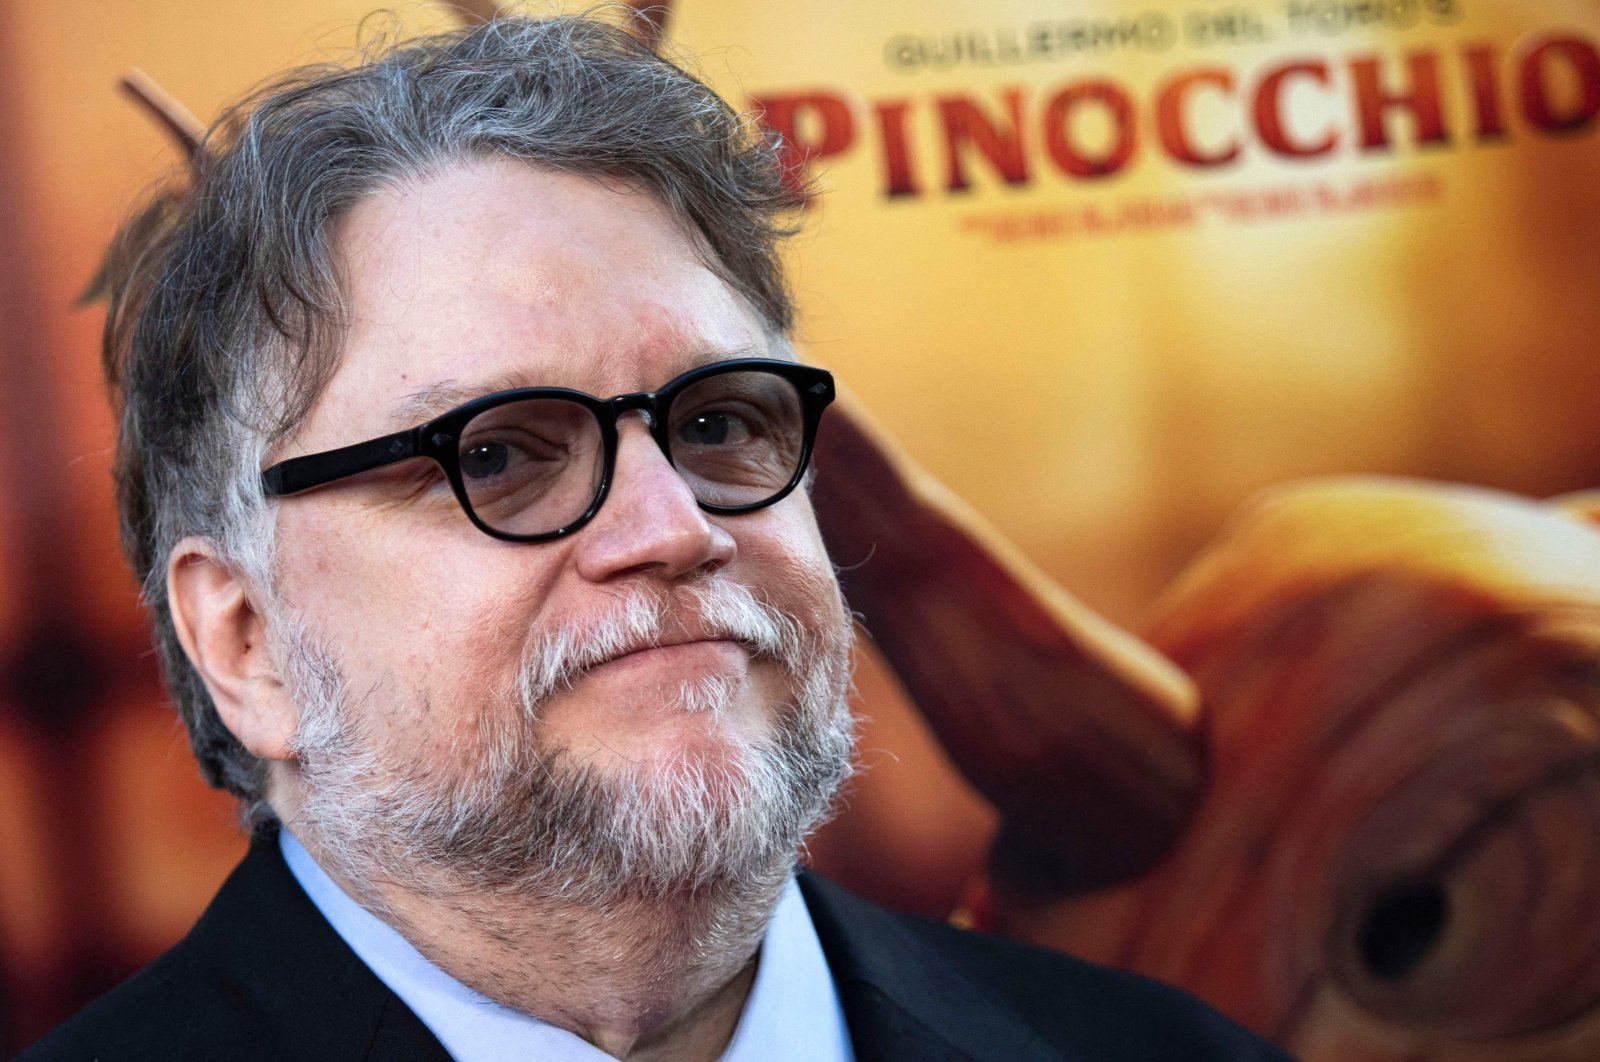 Guillermo del Toro melawan fasisme melalui boneka gelap di ‘Pinocchio’